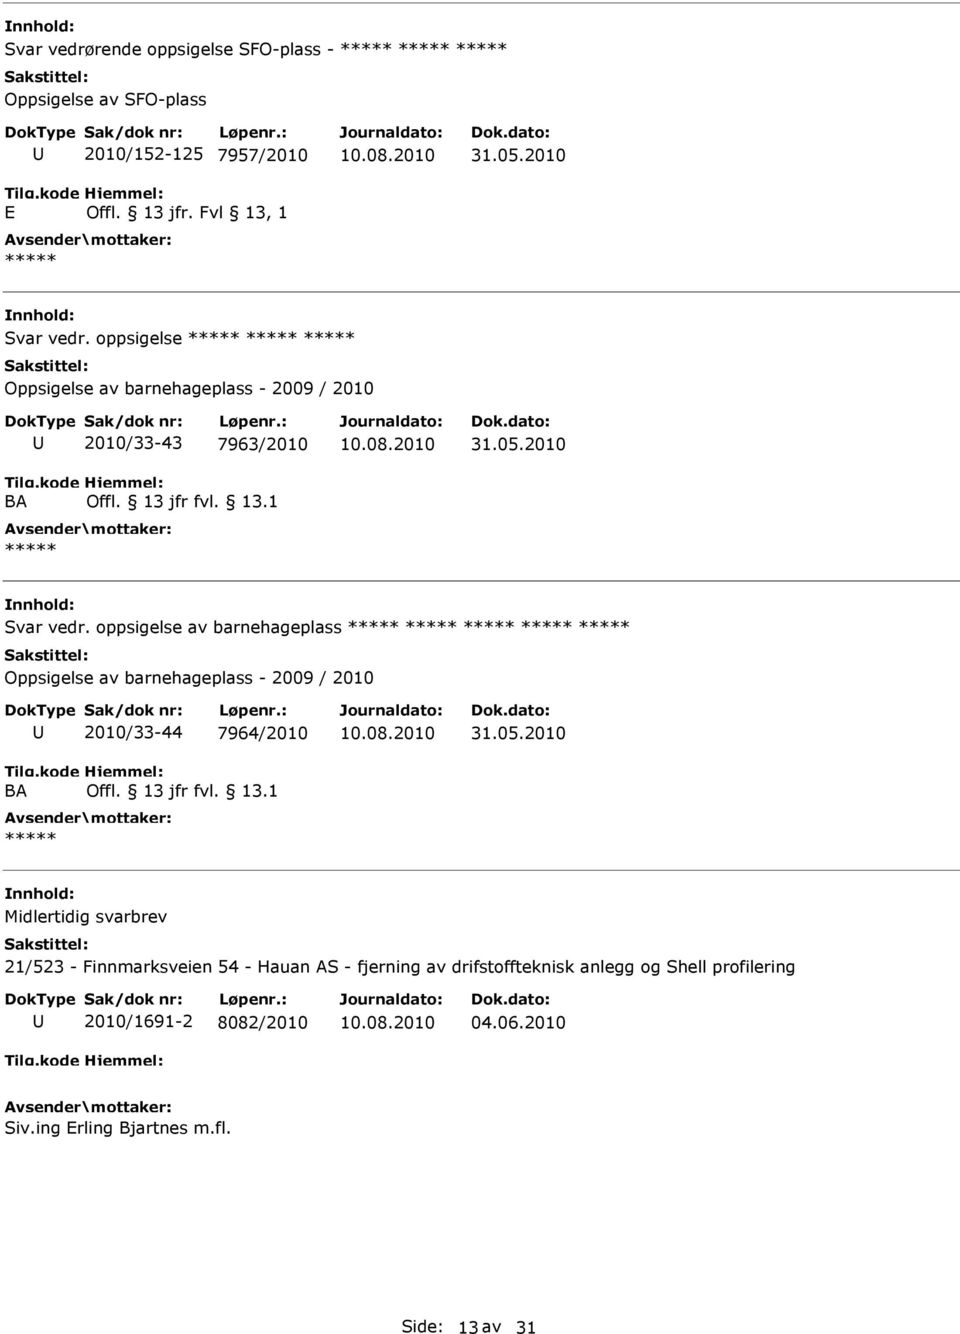 oppsigelse av barnehageplass Oppsigelse av barnehageplass - 2009 / 2010 2010/33-44 7964/2010 31.05.